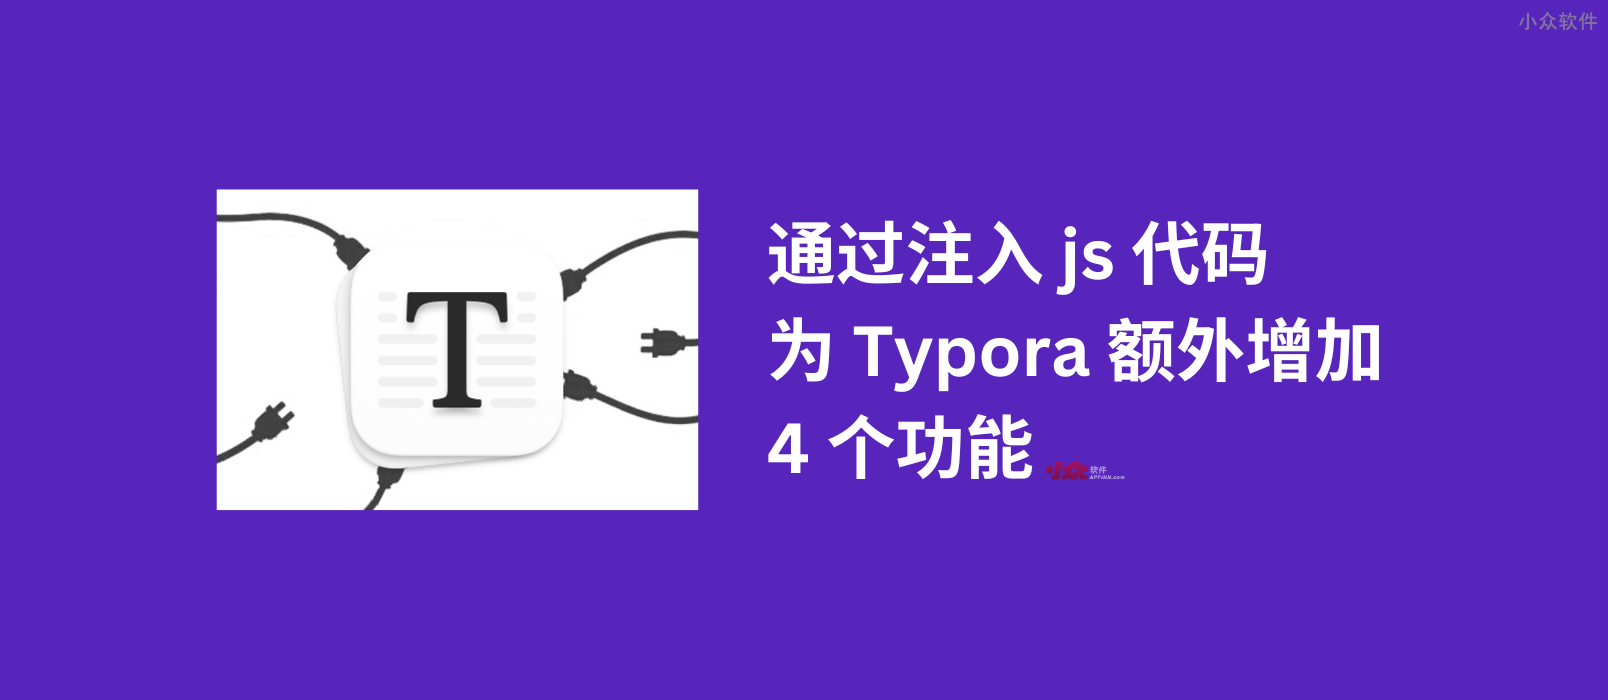 通过注入 js 代码，为 Typora 额外增加 4 个功能 1